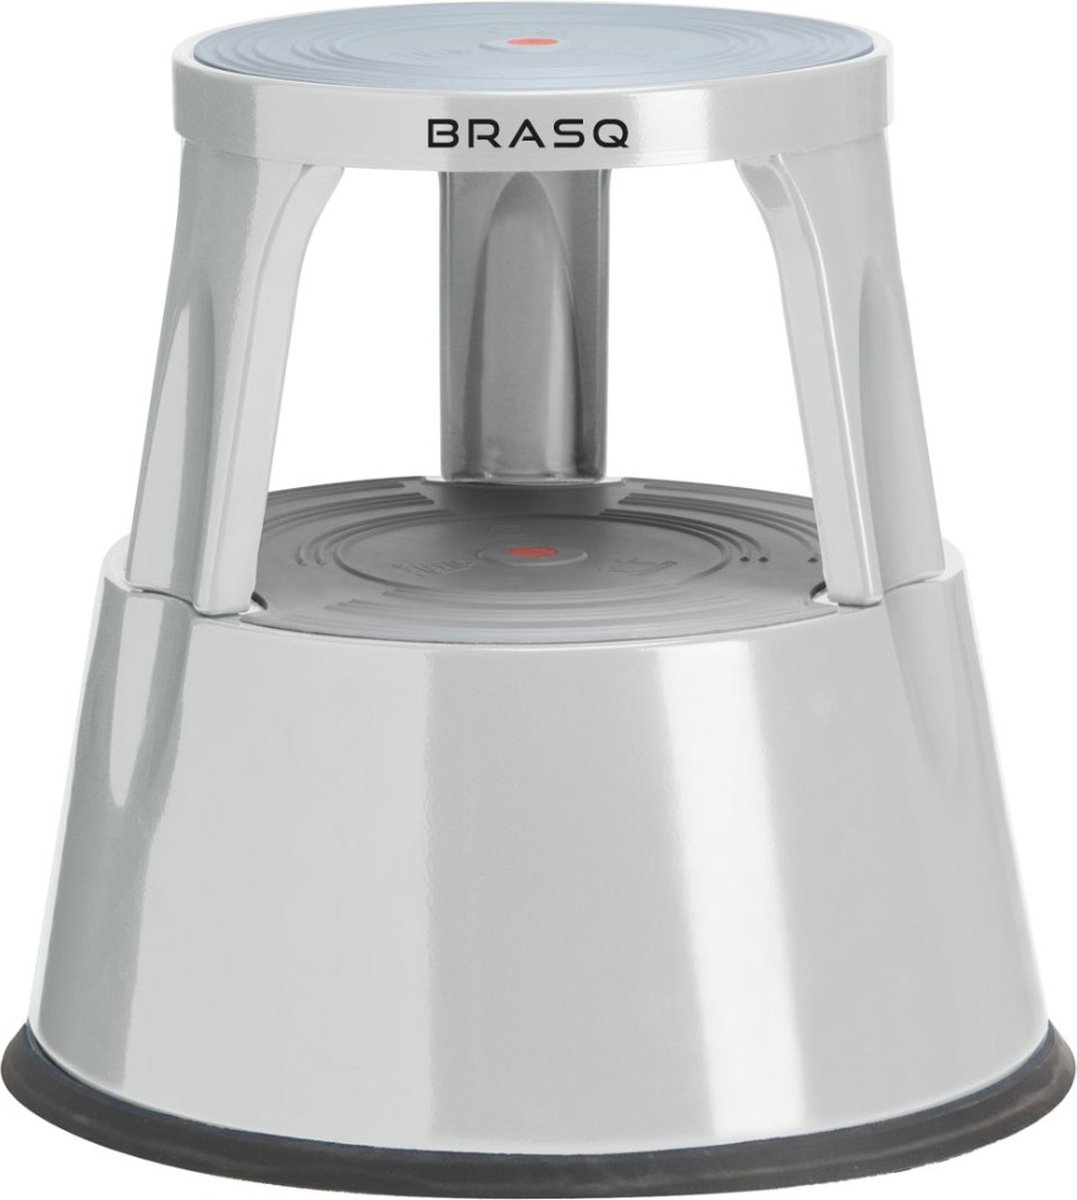 BRASQ Opstapkrukje Premium Grijs metaal ST300 draagvermogen 150 kg, opstapkruk, olifantenvoet, kantoorkruk, trap, roltrap, kruk